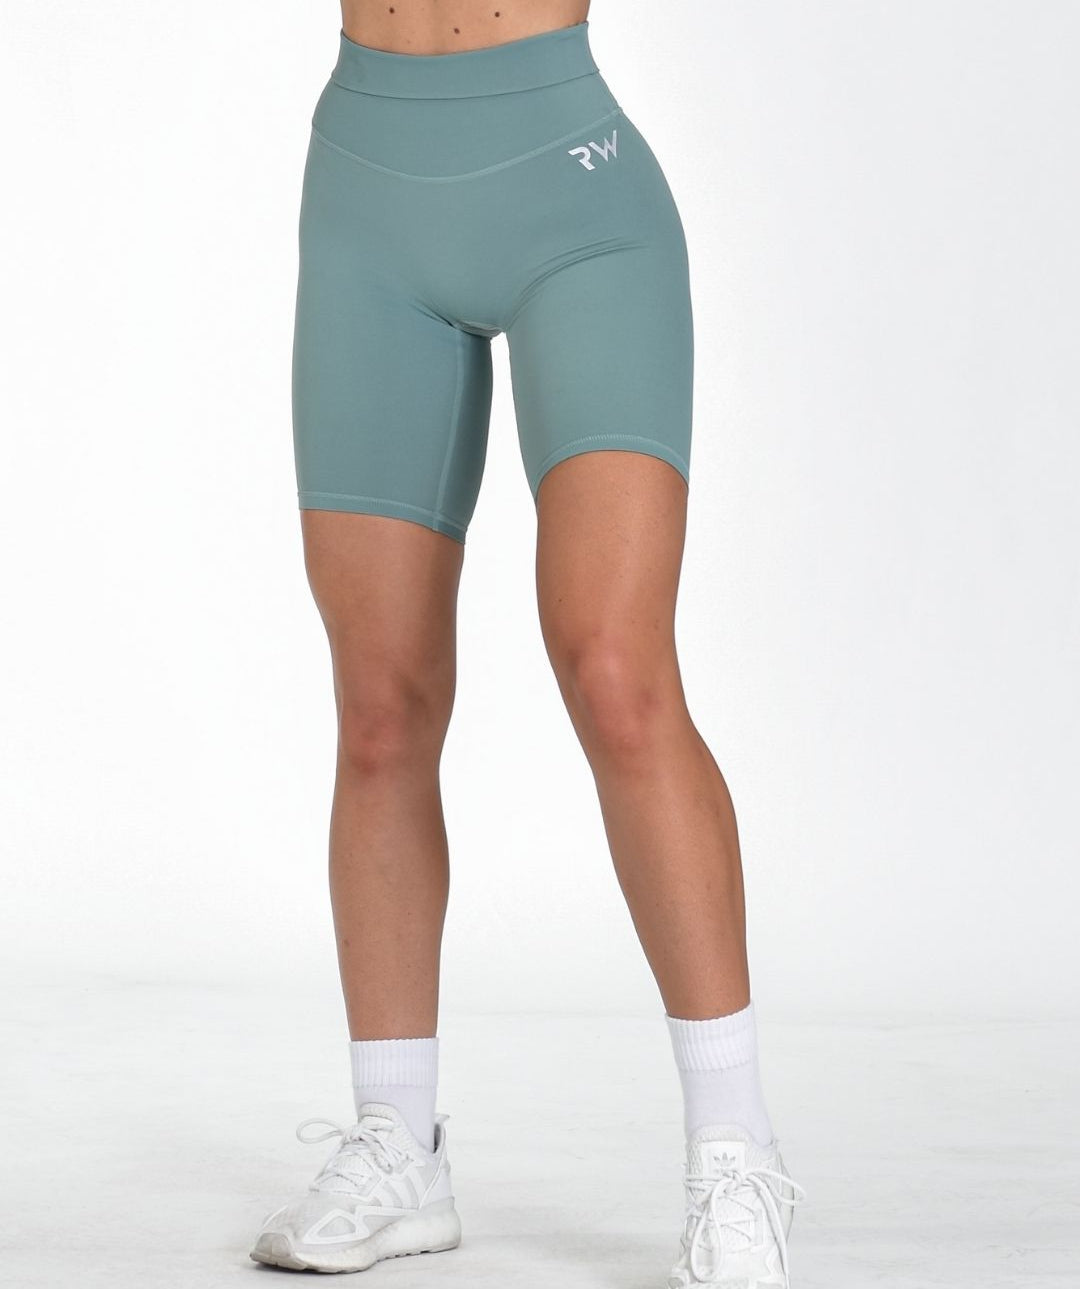 Rapid Wear - Butter Comfort Biker Shorts (Mint)